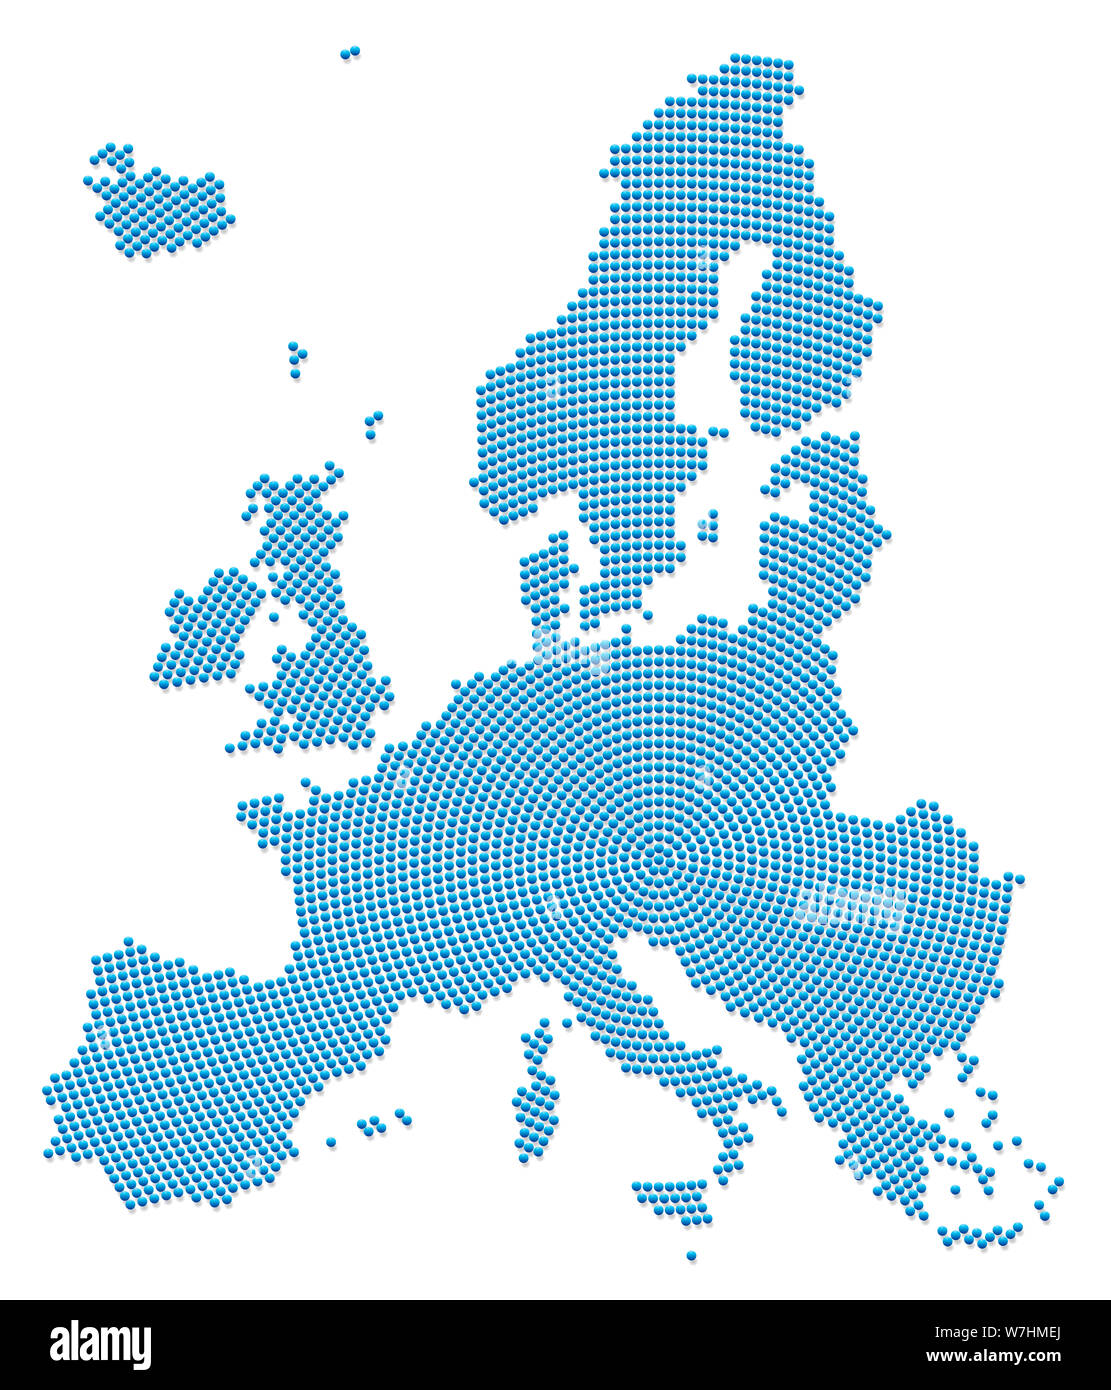 Europa Karte. Blau Muster mit 3d Eisen Perlen, radial von der Mitte nach außen die Silhouette des EU-Raums zu bilden. Abbildung auf Weiß. Stockfoto